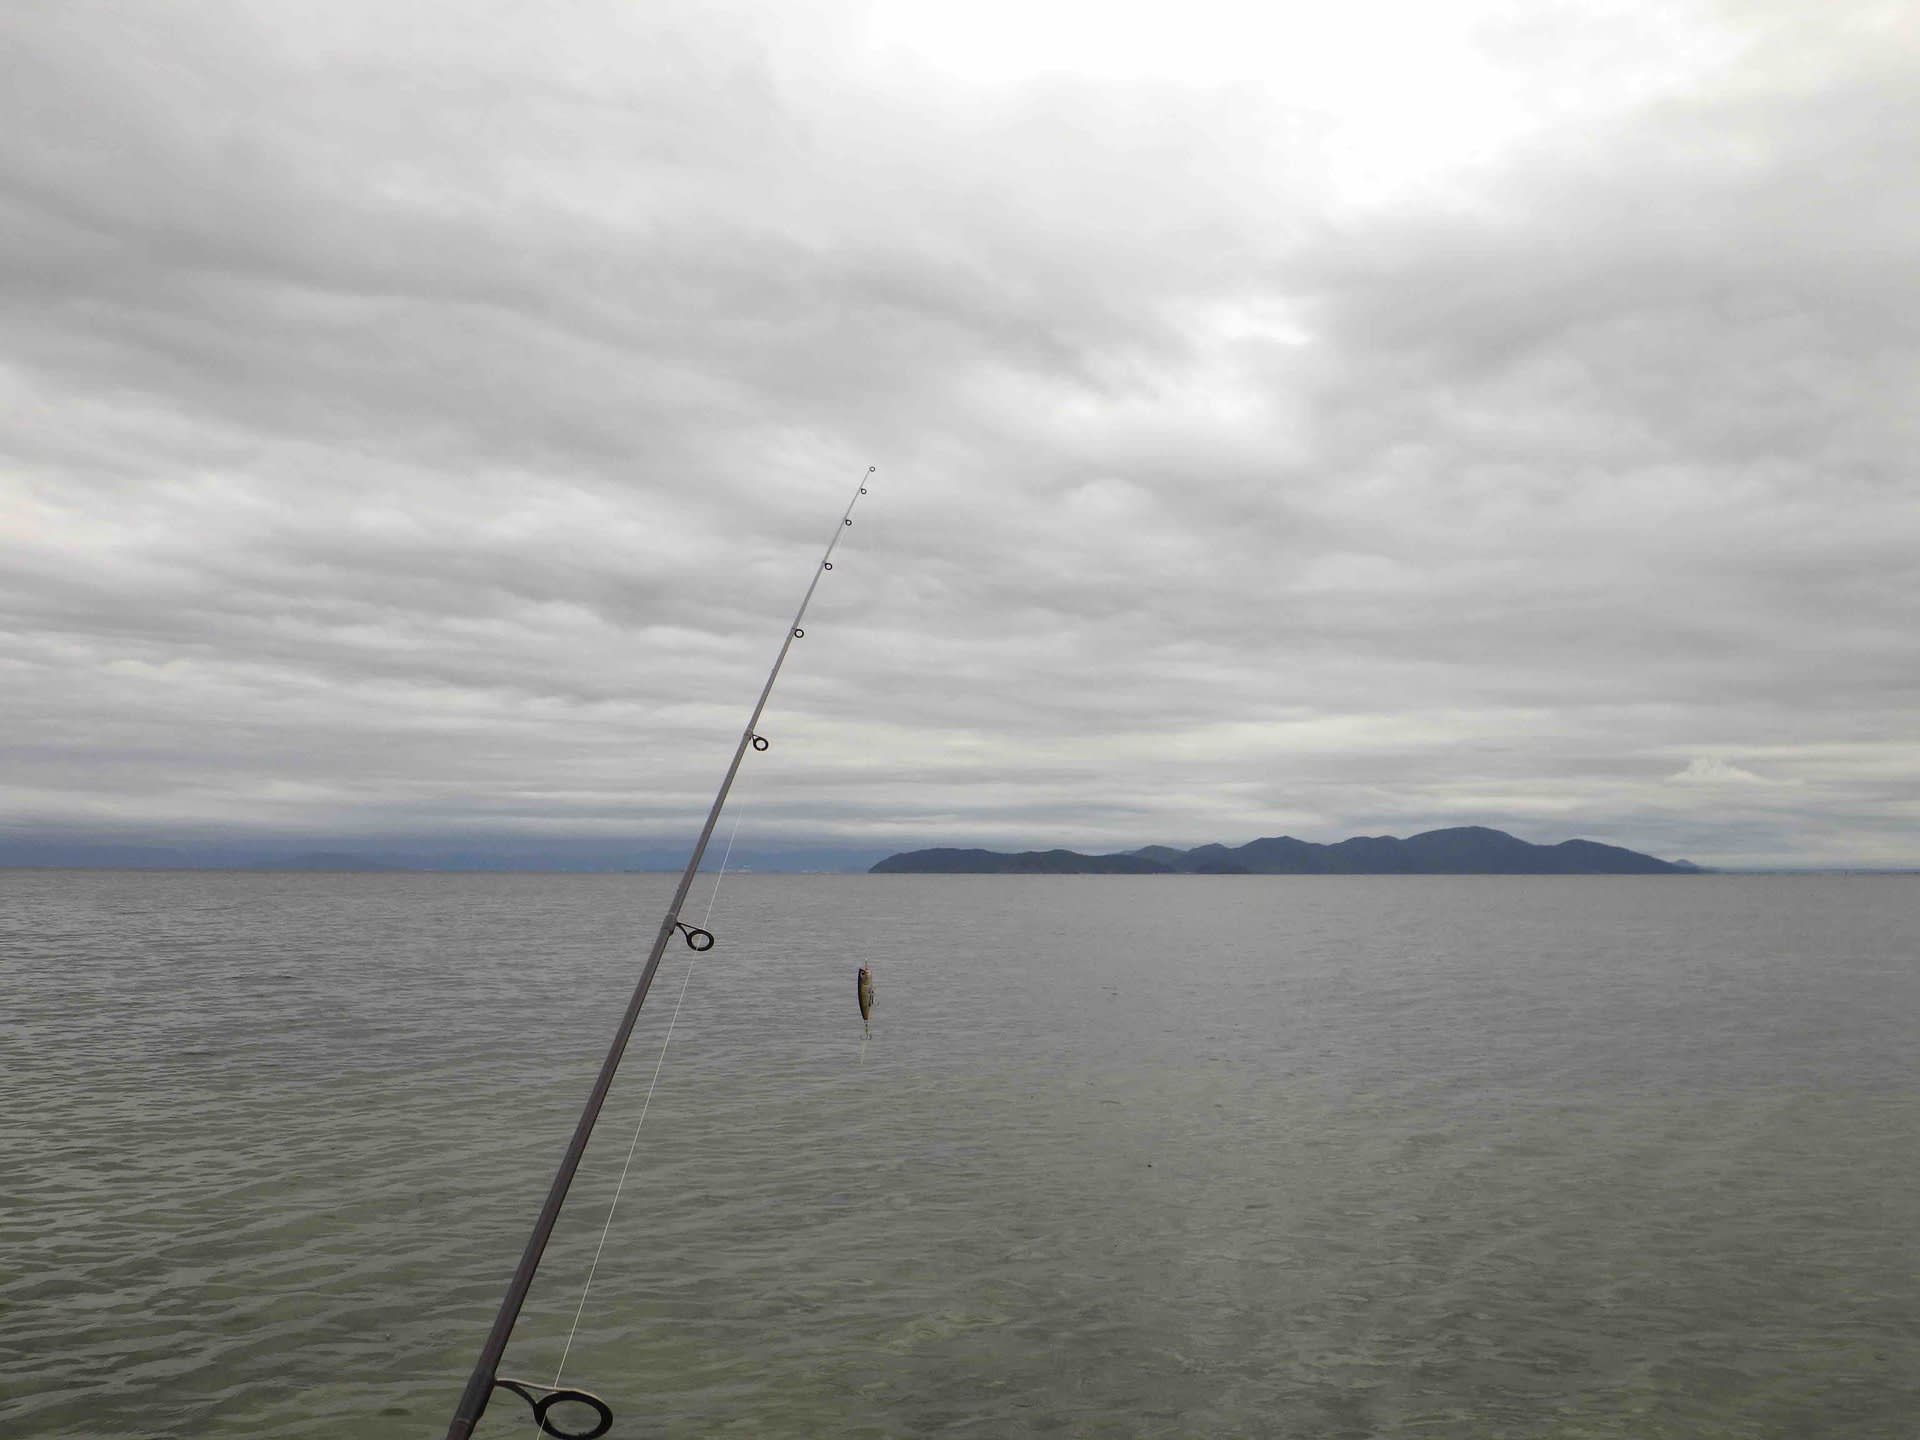 9月19日 祝 の琵琶湖 釣りたいサカナは星の数ほど